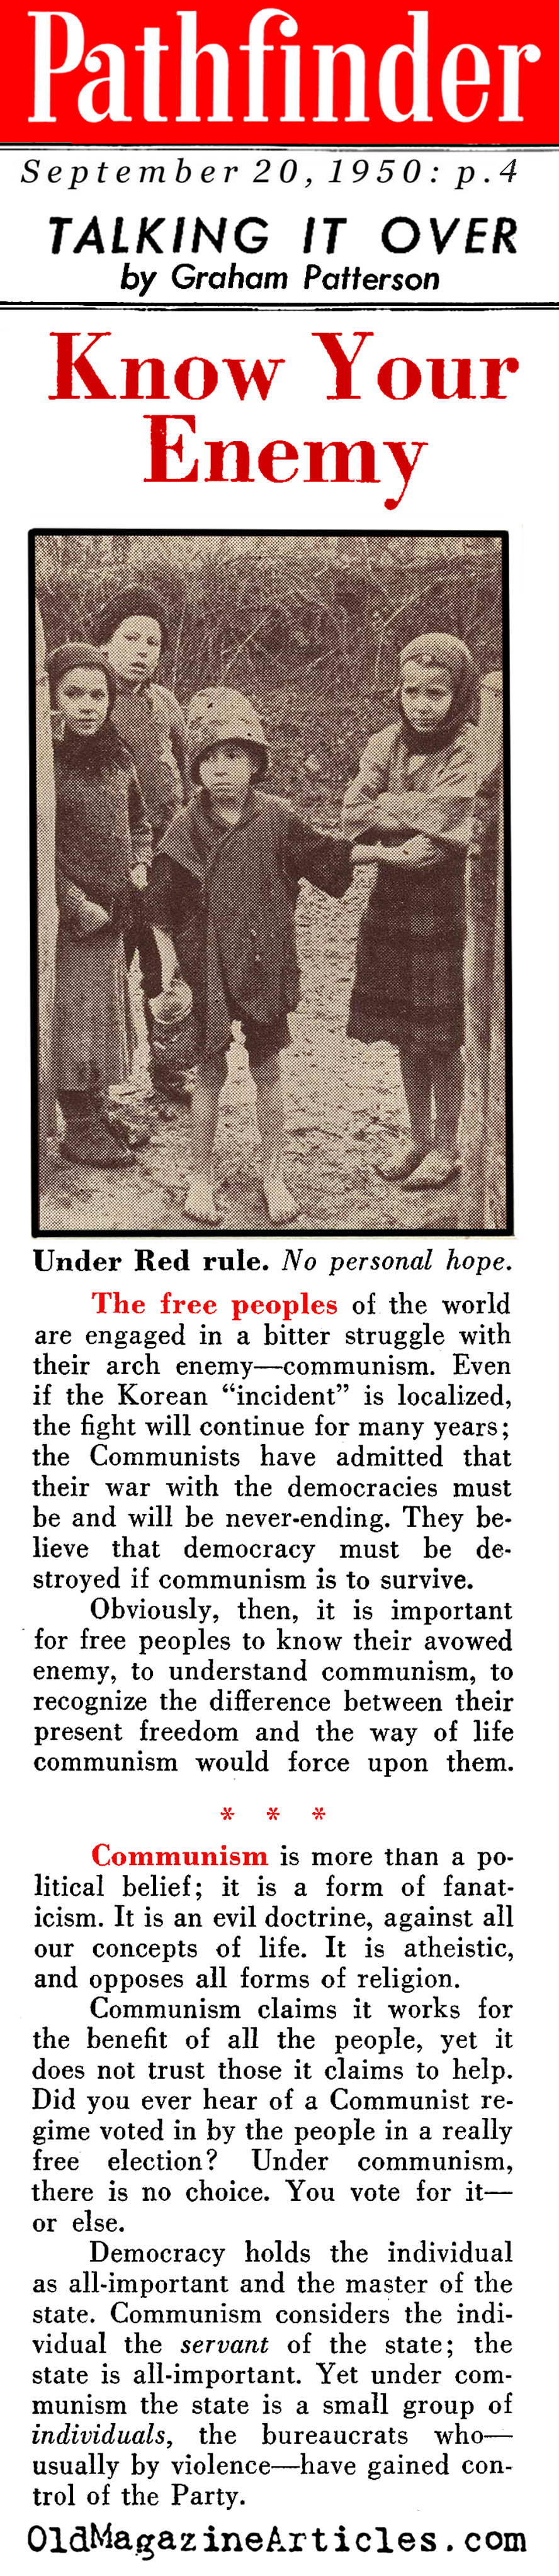 Communism vs Democracy (Pathfinder Magazine, 1950)